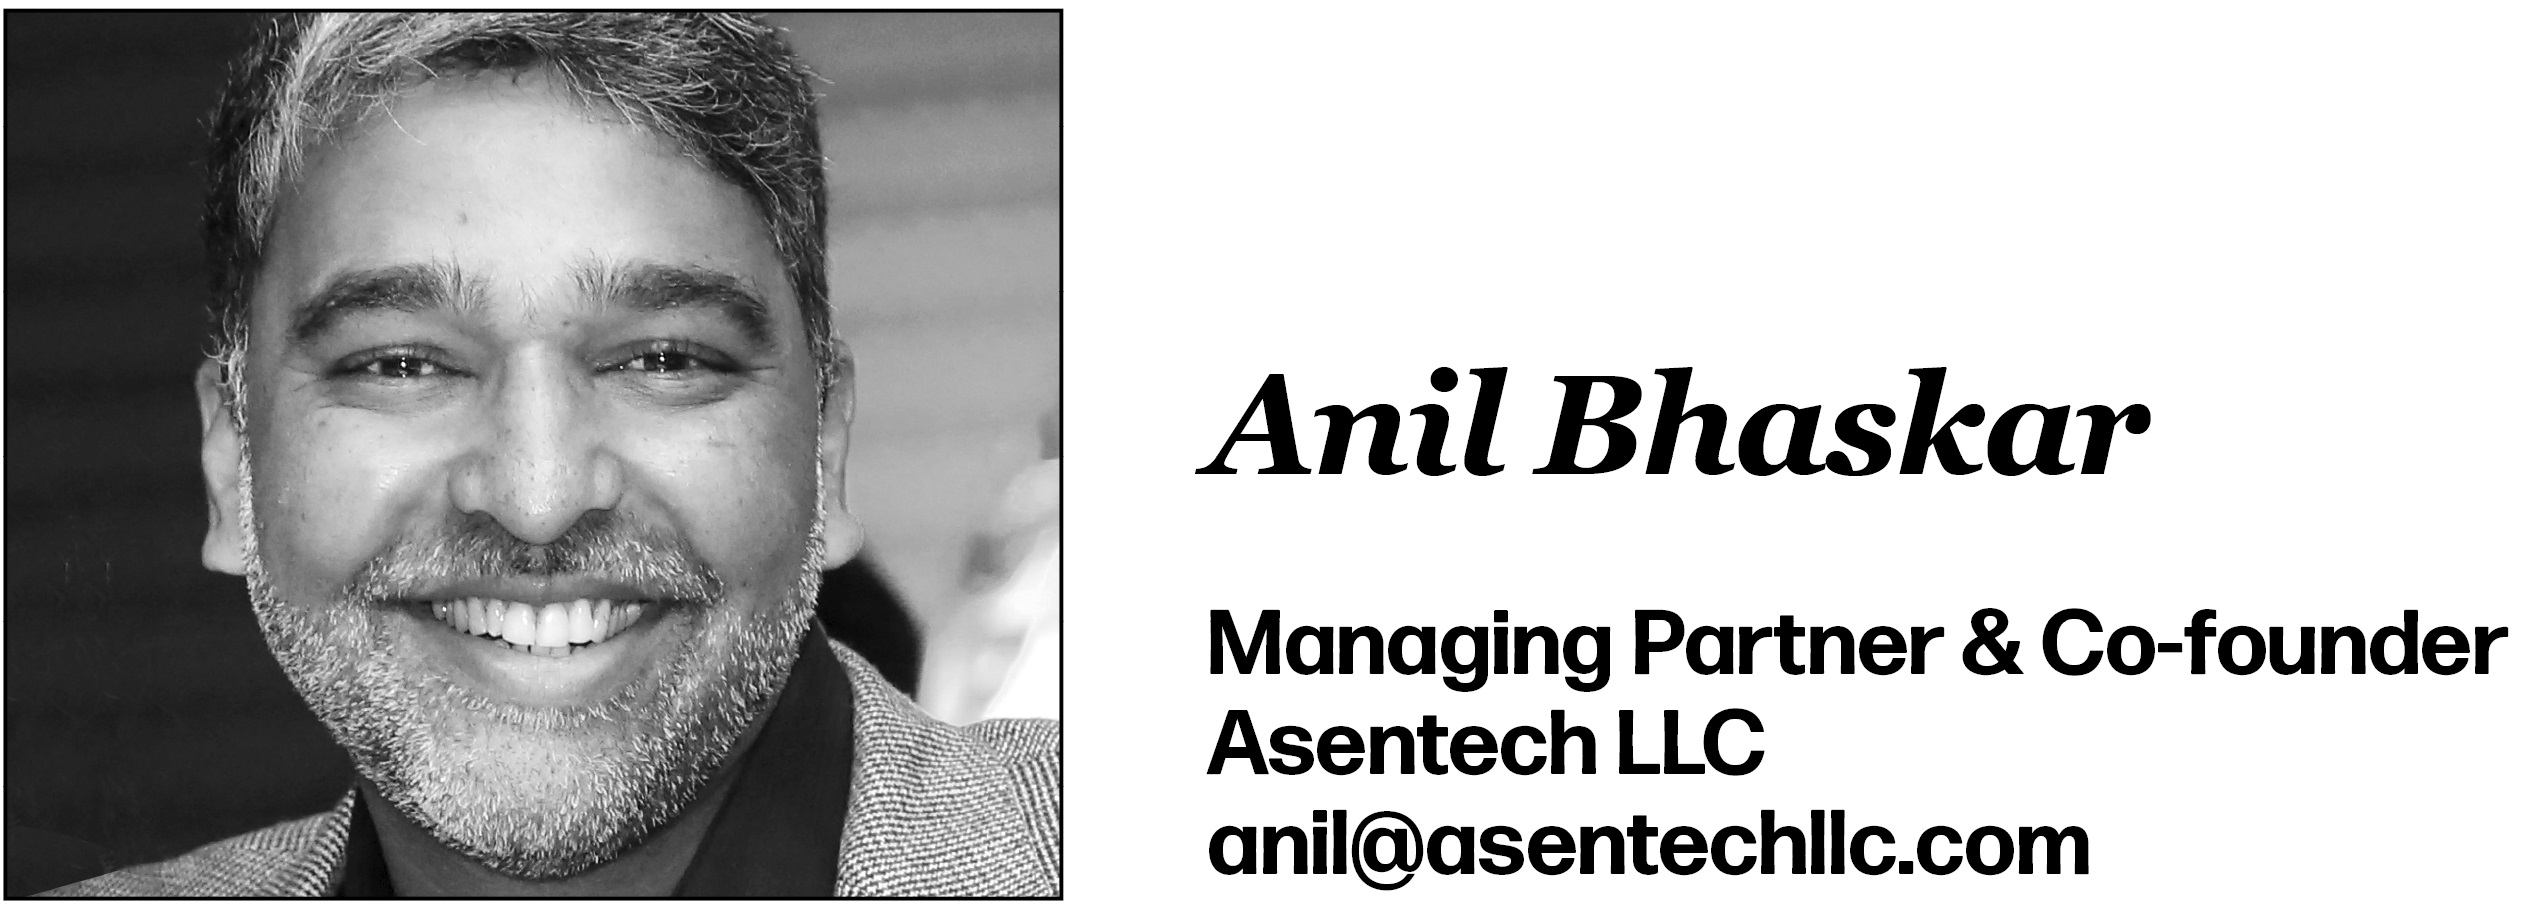 Anil Bhaskar Managing Partner & Co-founder Asentech LLC anil@asentechllc.com 